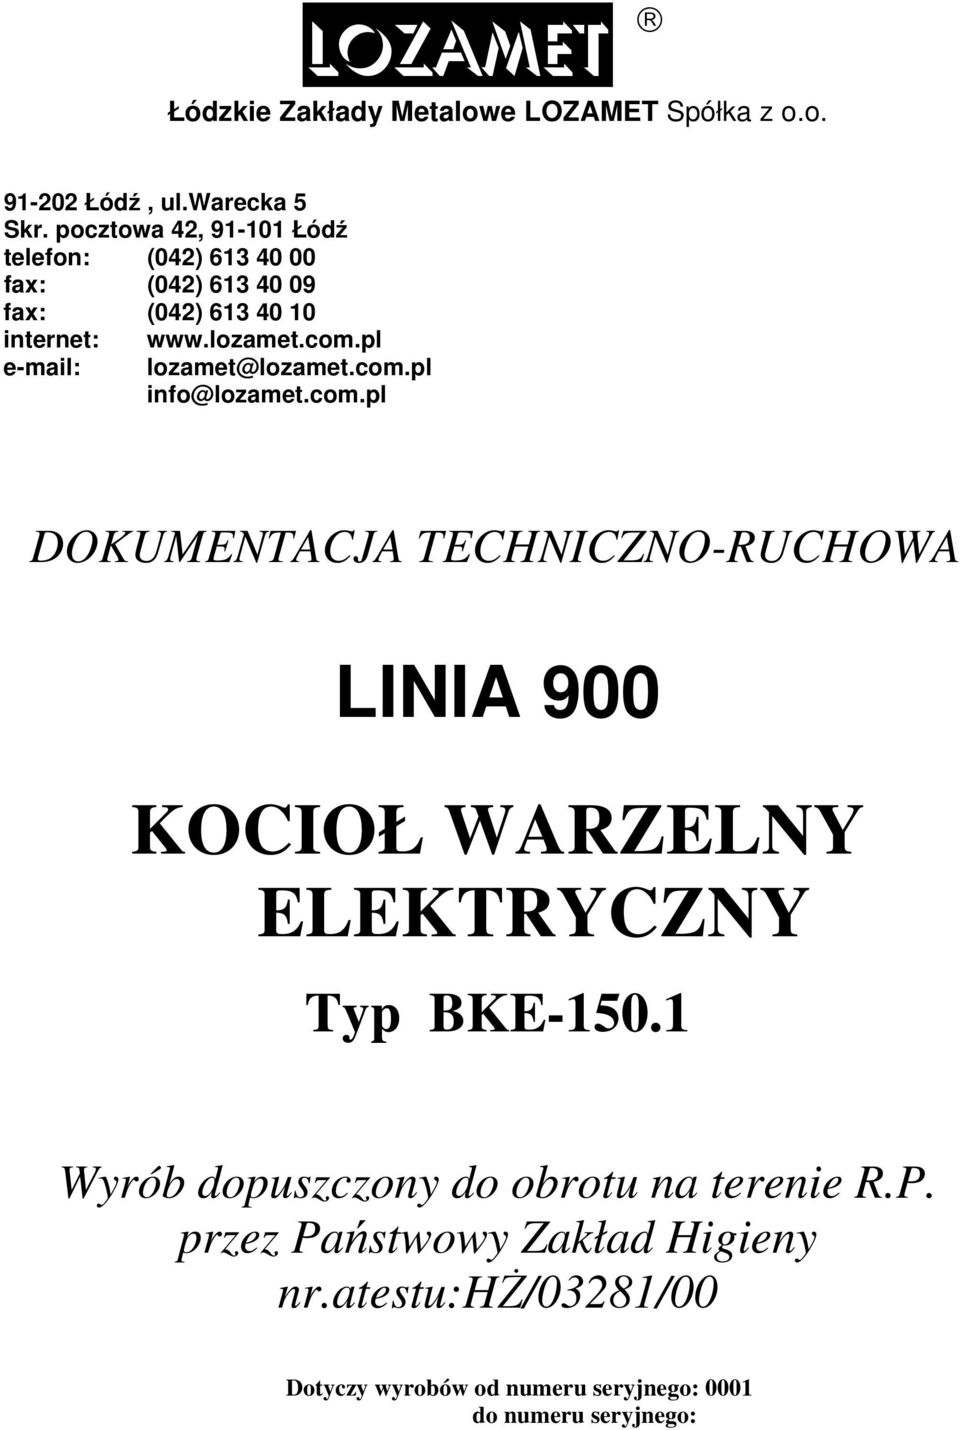 com.pl lozamet@lozamet.com.pl info@lozamet.com.pl DOKUMENTACJA TECHNICZNO-RUCHOWA LINIA 900 KOCIOŁ WARZELNY ELEKTRYCZNY Typ BKE-150.